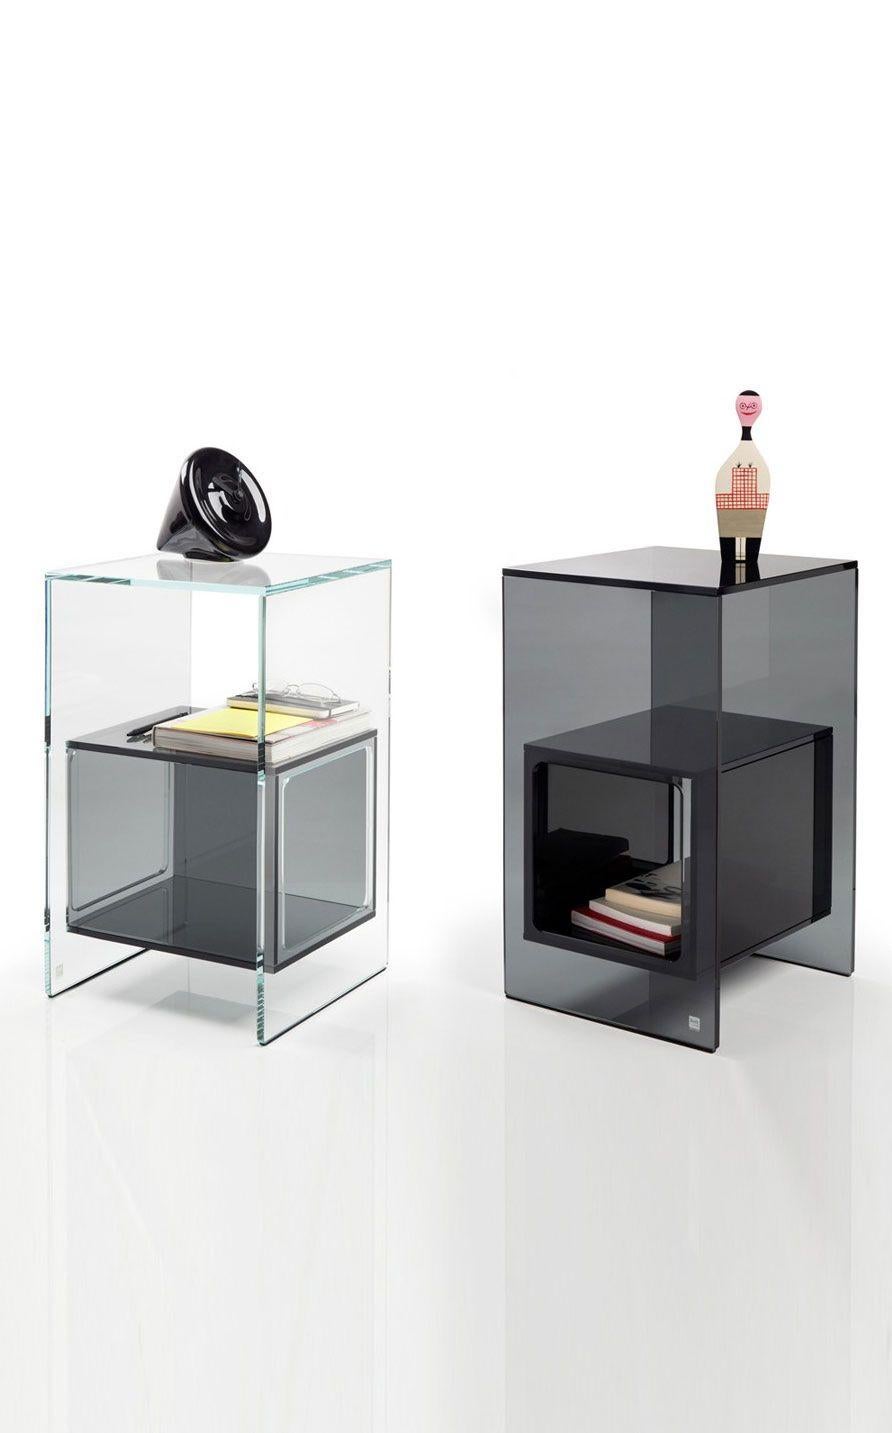 Table basse avec compartiment intérieur cubique en verre de 10 mm d'épaisseur. Disponible en plusieurs finitions. Structure en verre gris fumé, cube en verre noir95.
         